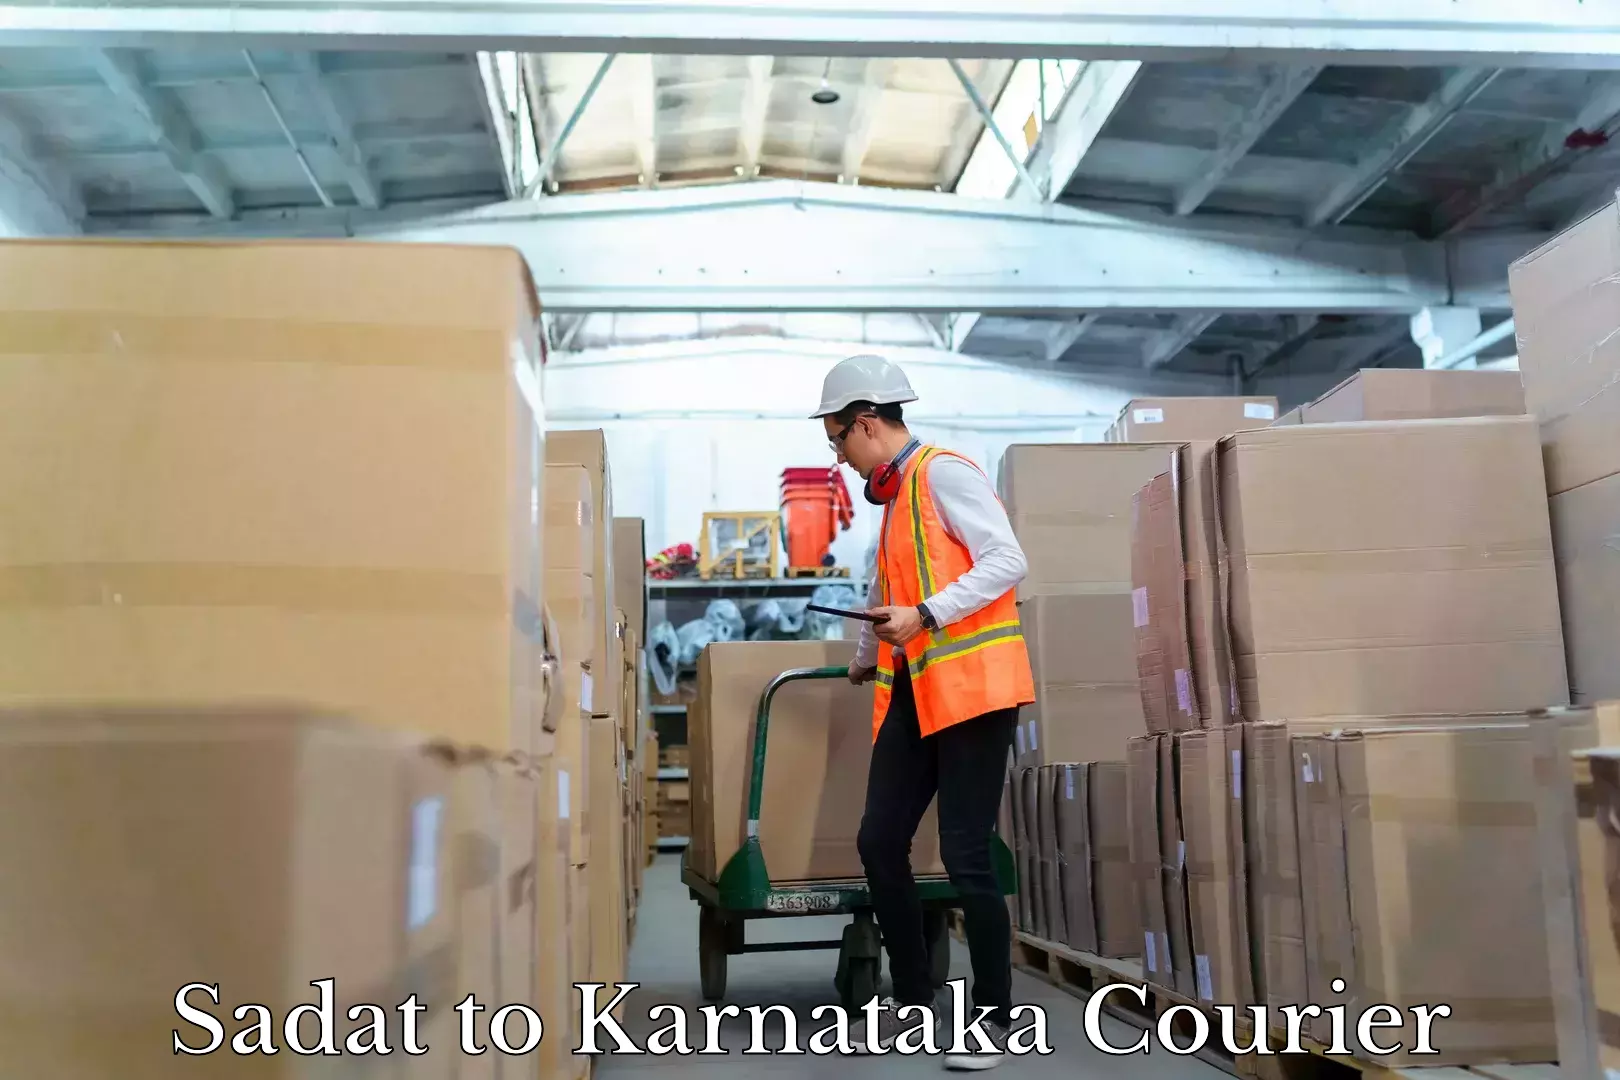 Professional parcel services Sadat to Karnataka